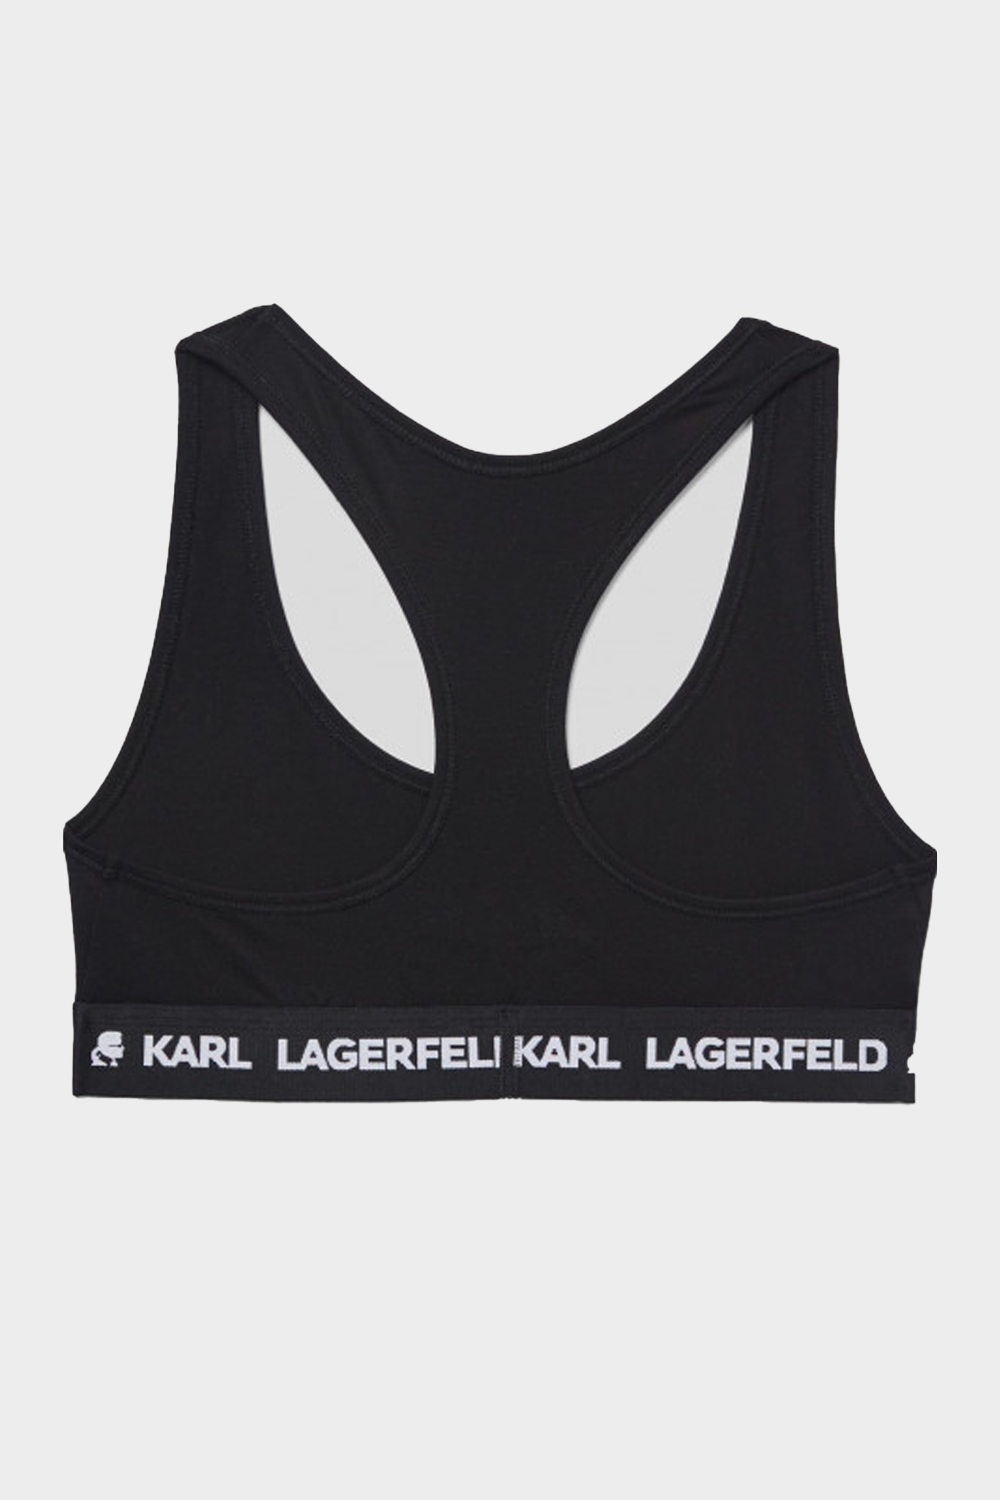 גוזיות לנשים  בצבע שחור KARL LAGERFELD